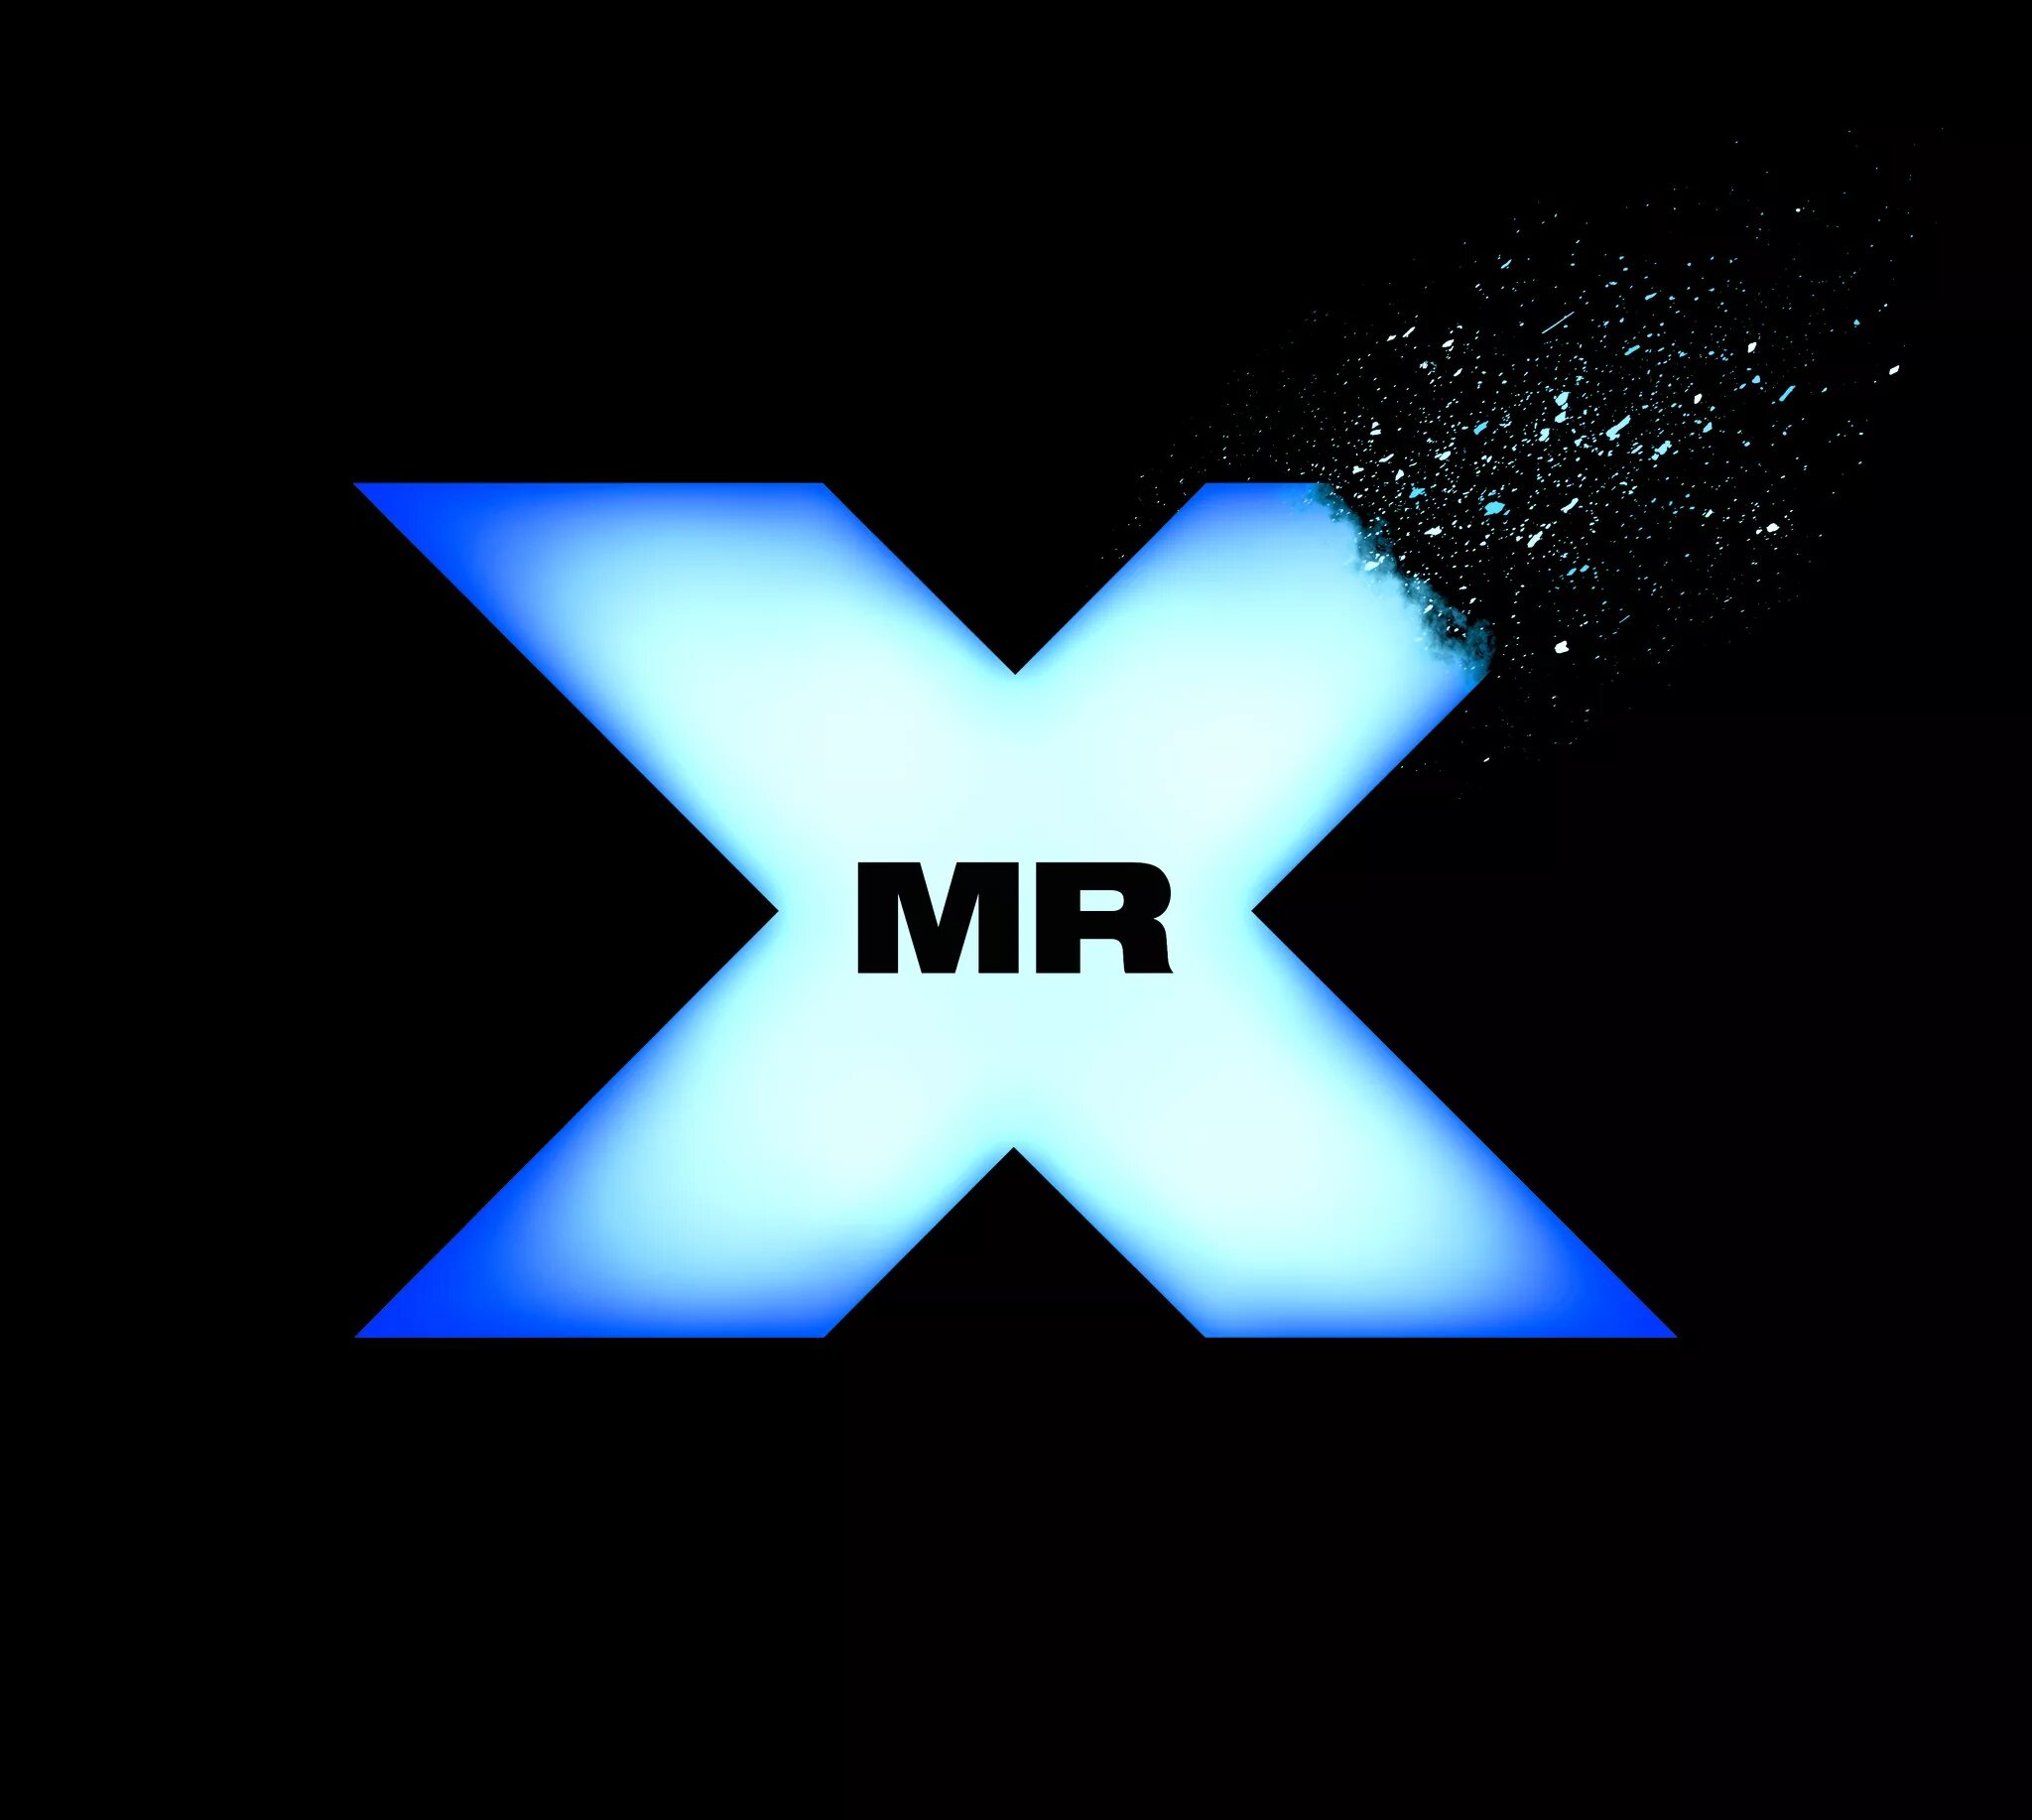 Аватарка икса. MRX. Картинки MRX. Аватарка x. Логотип Икс.